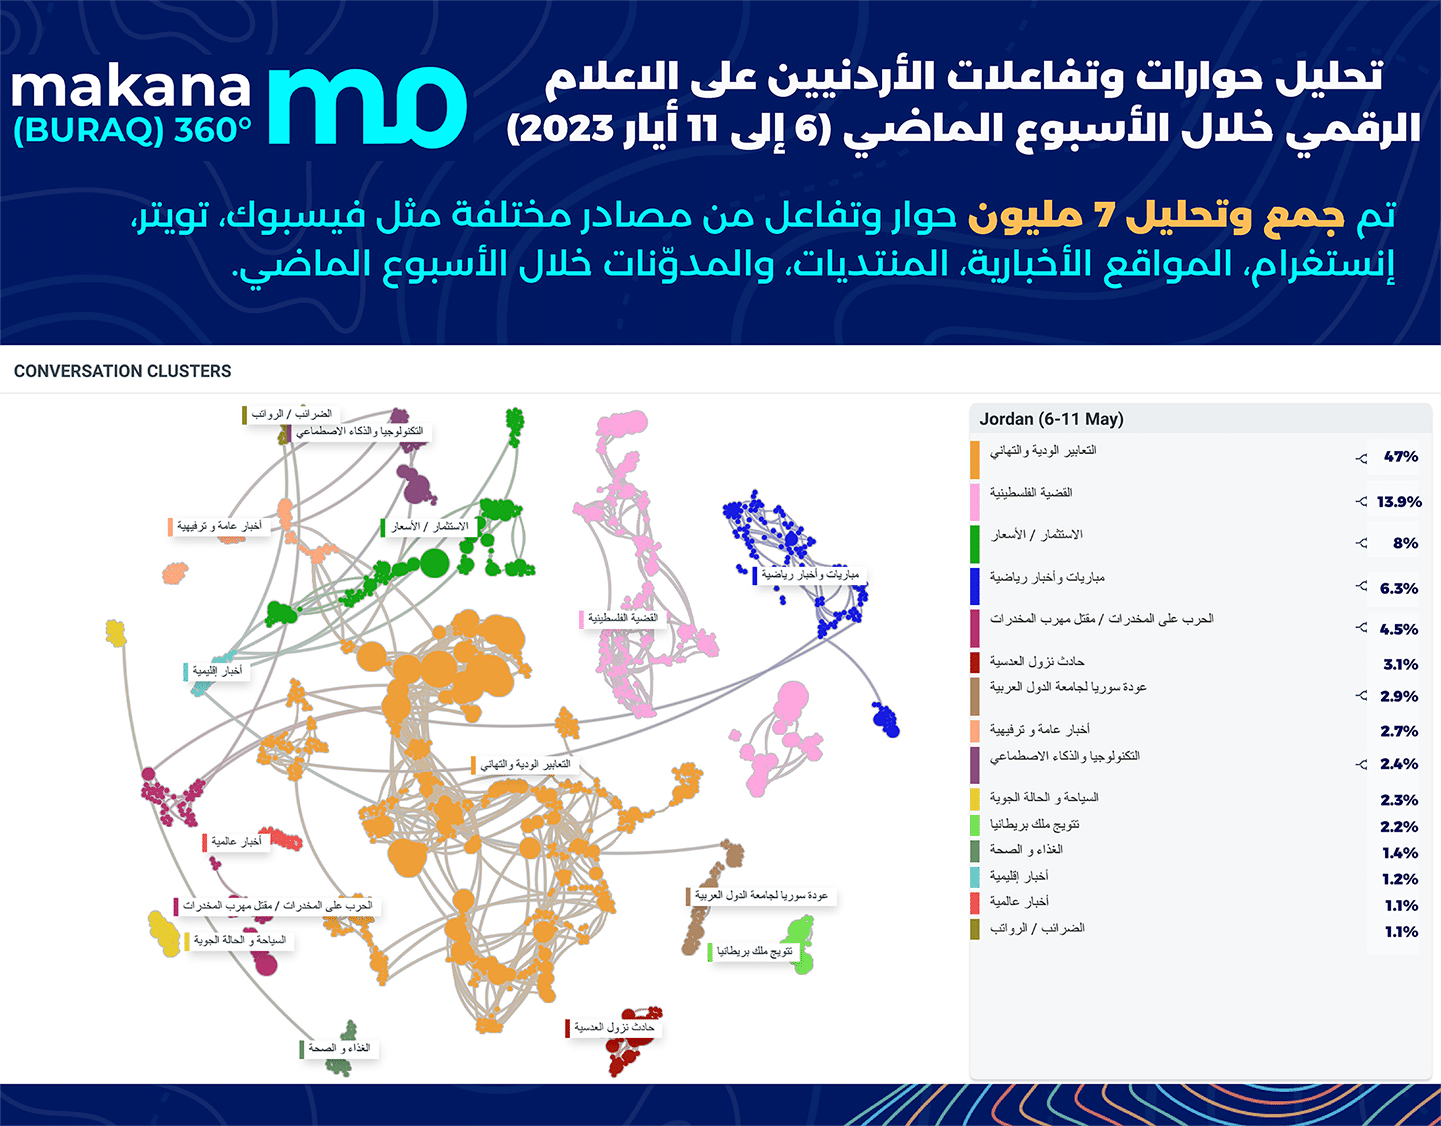 تحليل حوارات وتفاعالت الأردنيين على العالم الرقمي خلال الأسبوع الماضي( 6 الى 11 ايار 2023)